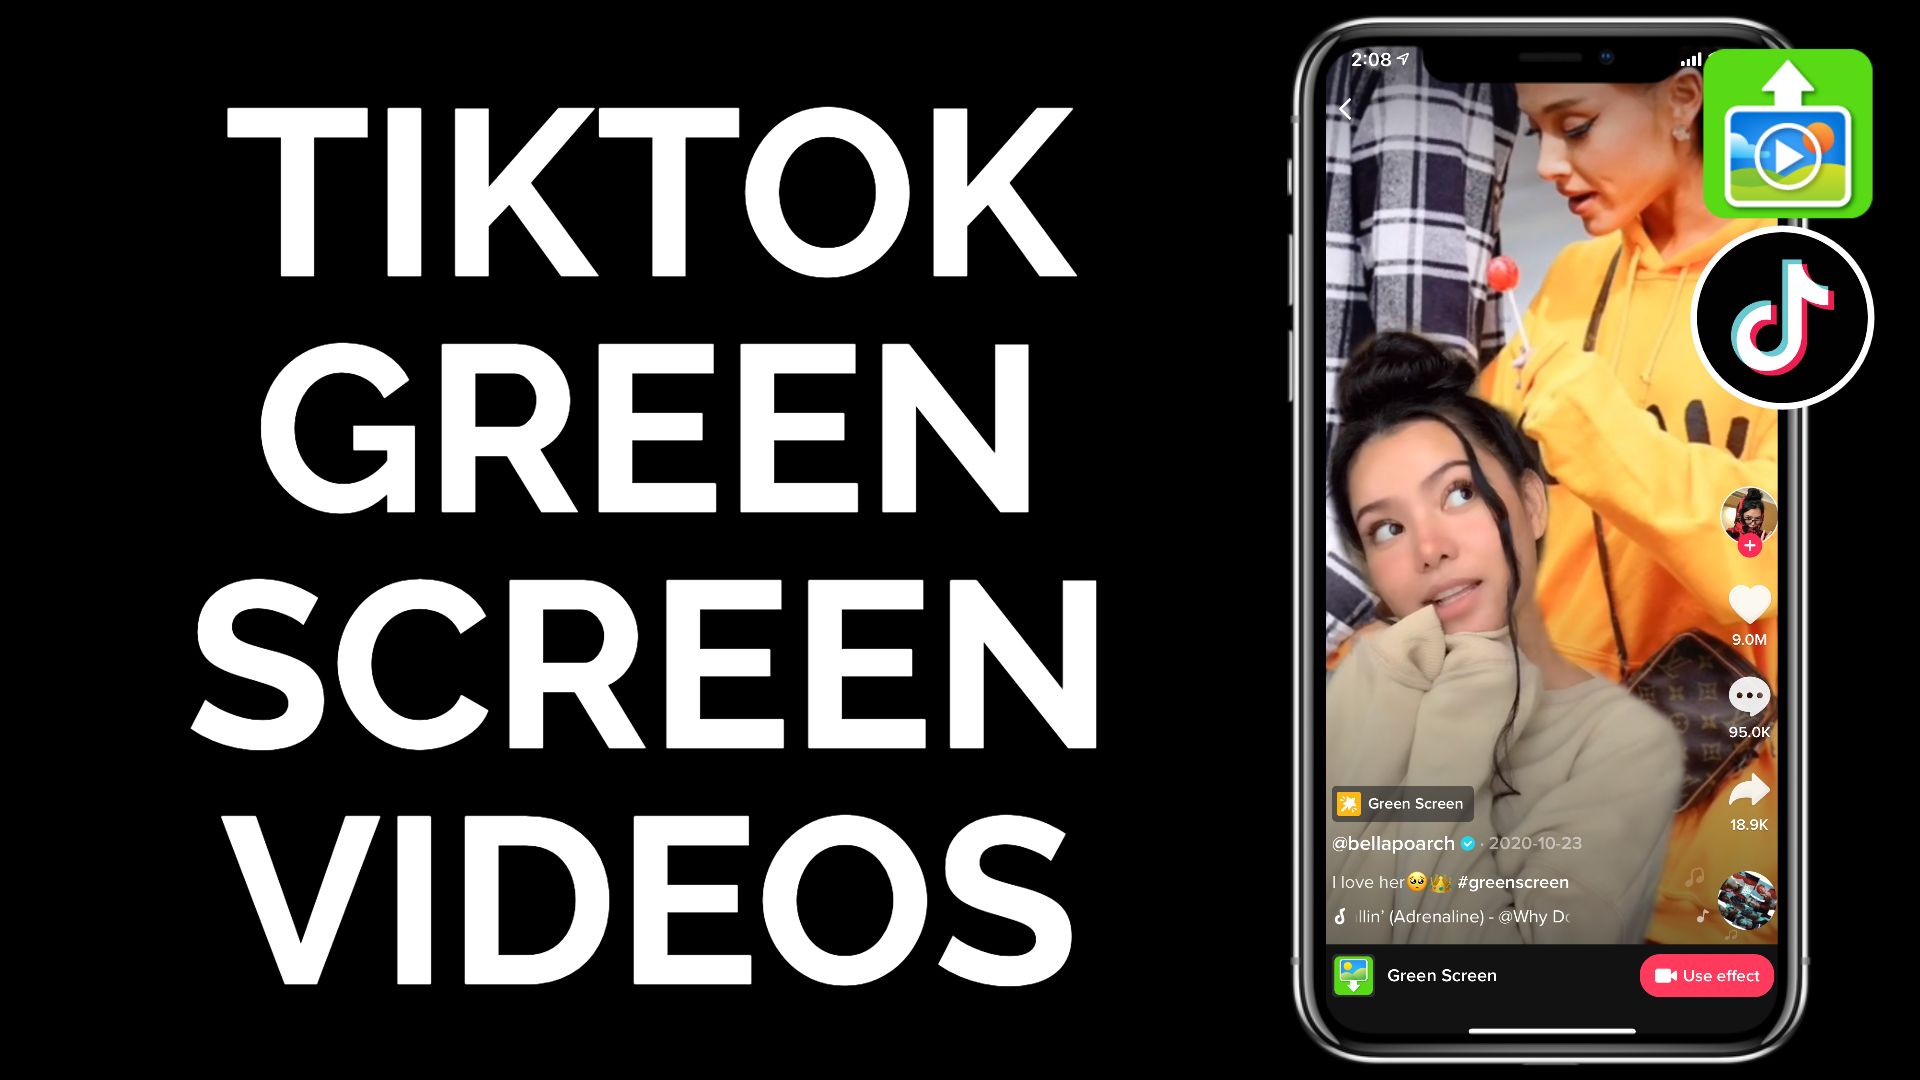 TikTok Green Screen: Truy cập video nền xanh TikTok của chúng tôi để tạo ra những video độc đáo, mang lại sự chuyên nghiệp cho công việc của bạn. Bất kỳ ai cũng có thể dễ dàng tạo ra những video tuyệt vời với những video nền xanh của chúng tôi.